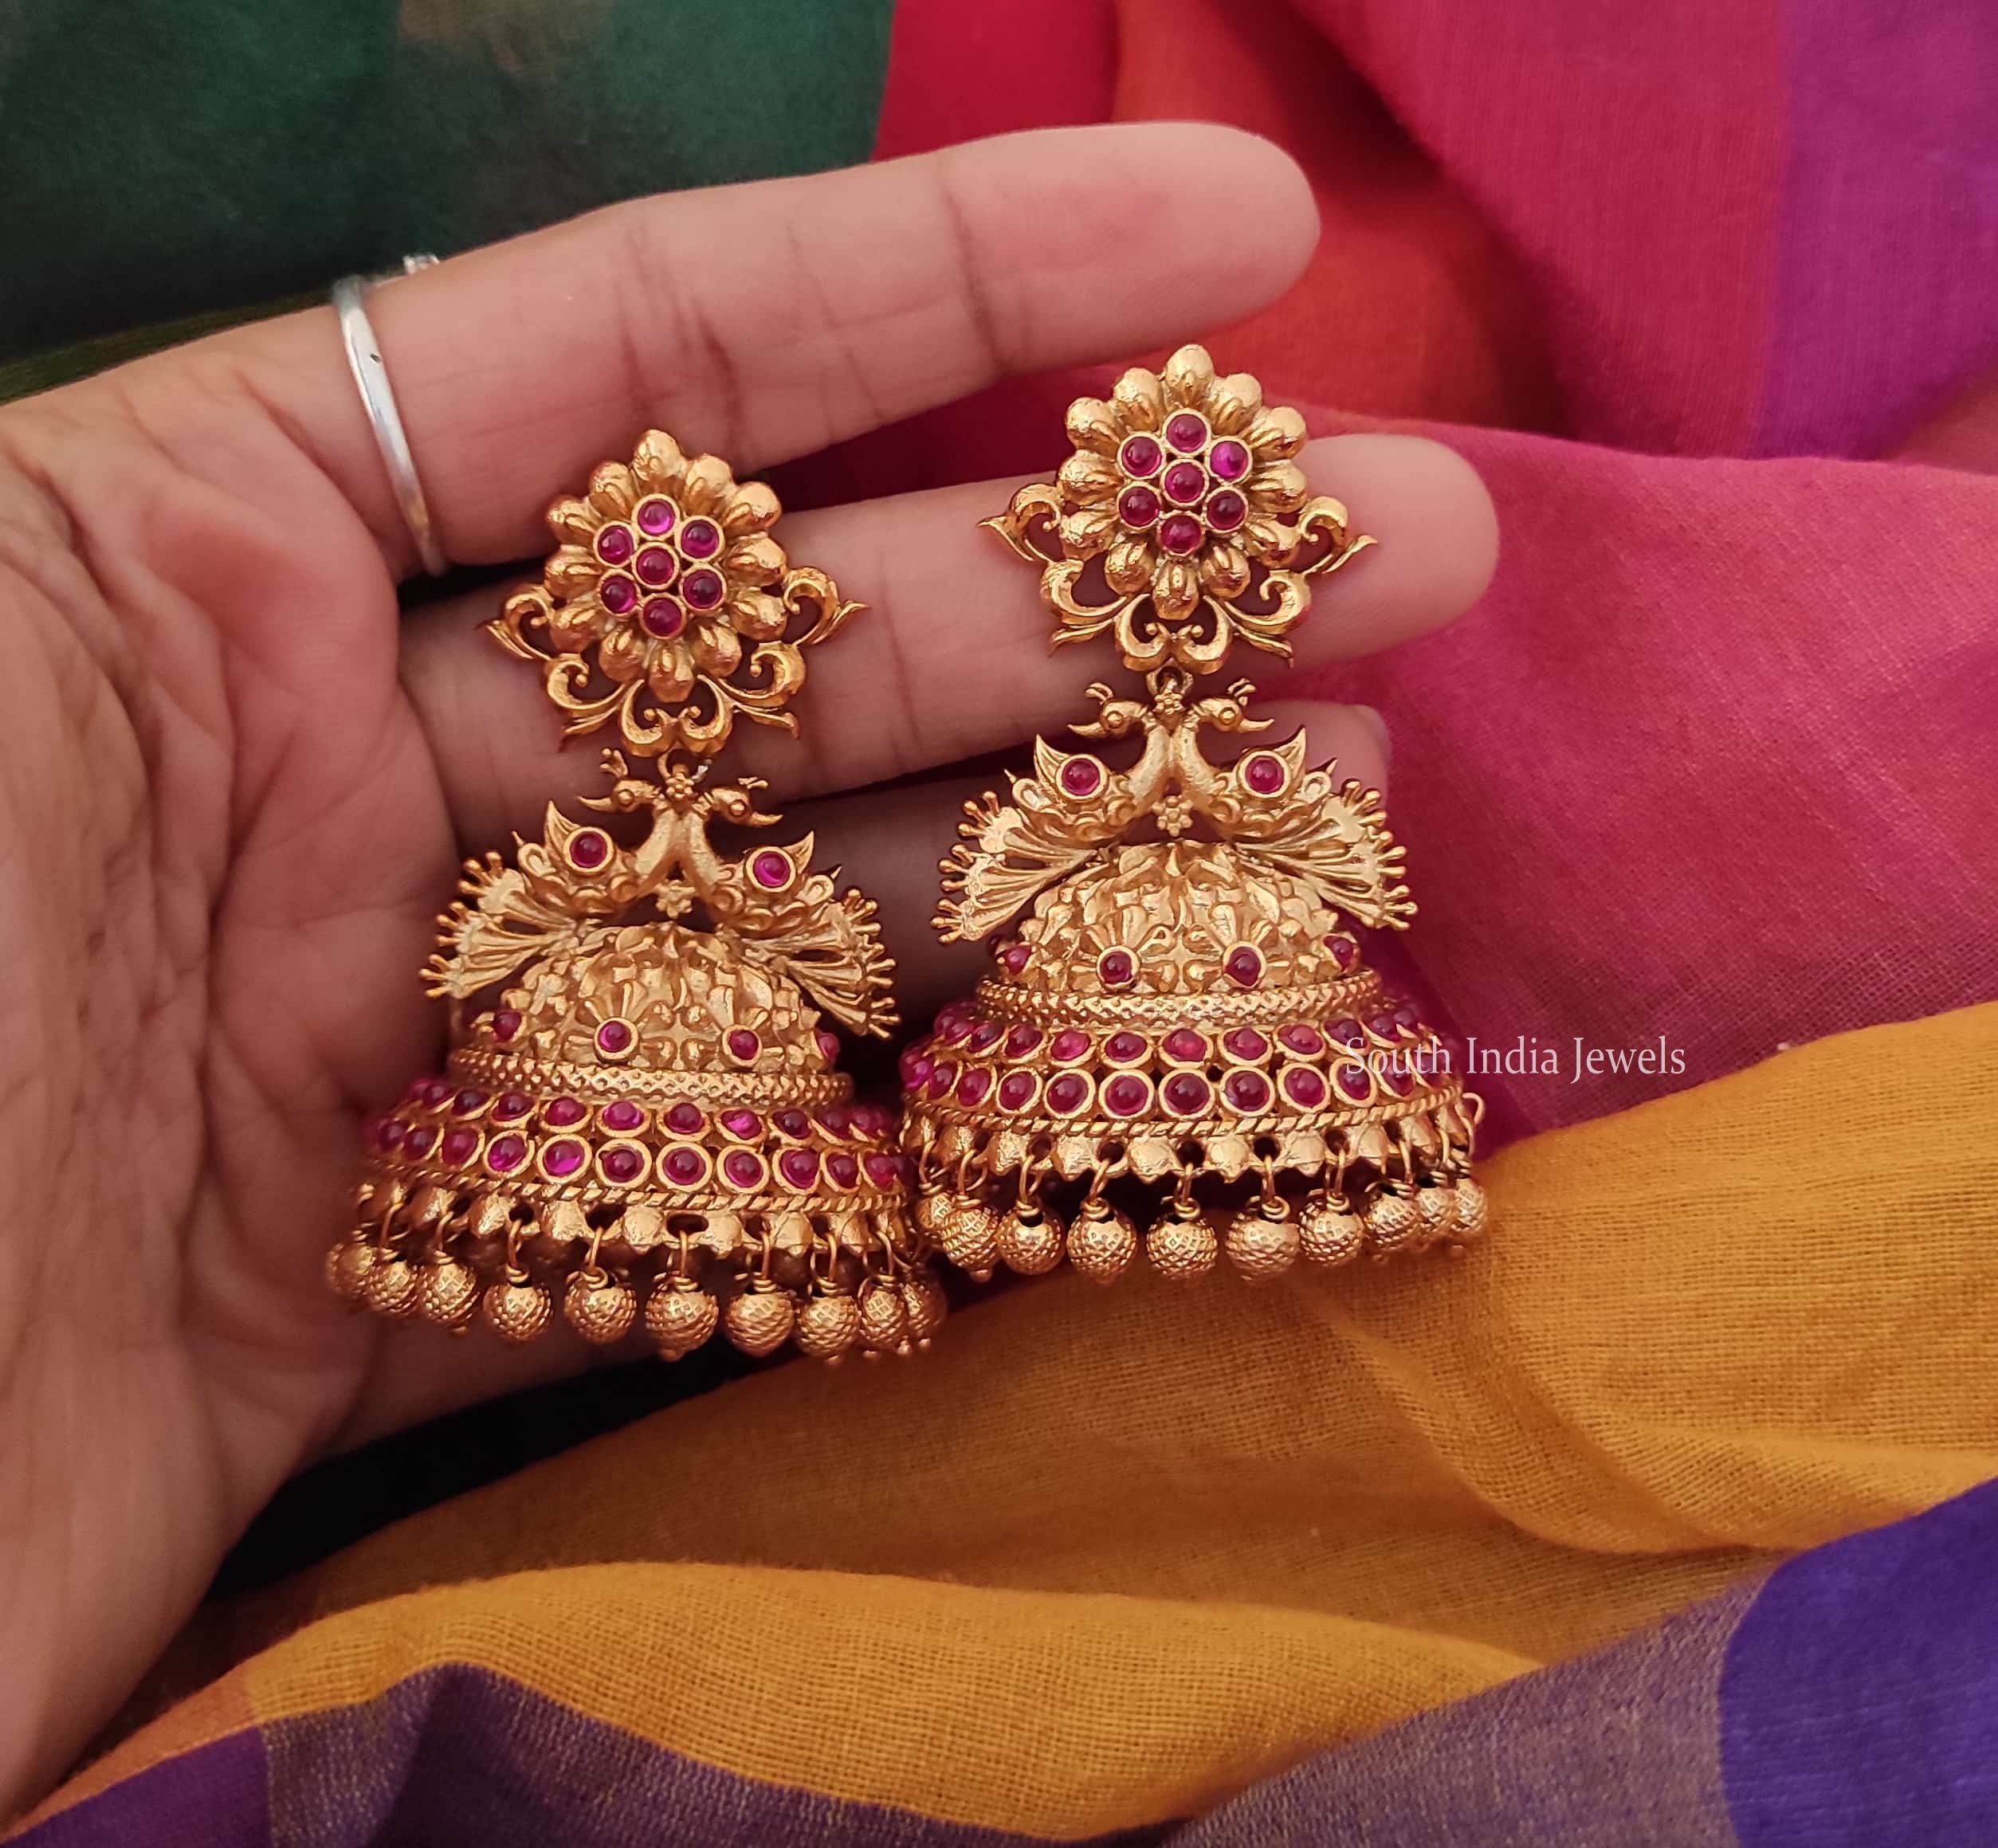 Earrings In Gold-Like Patterns